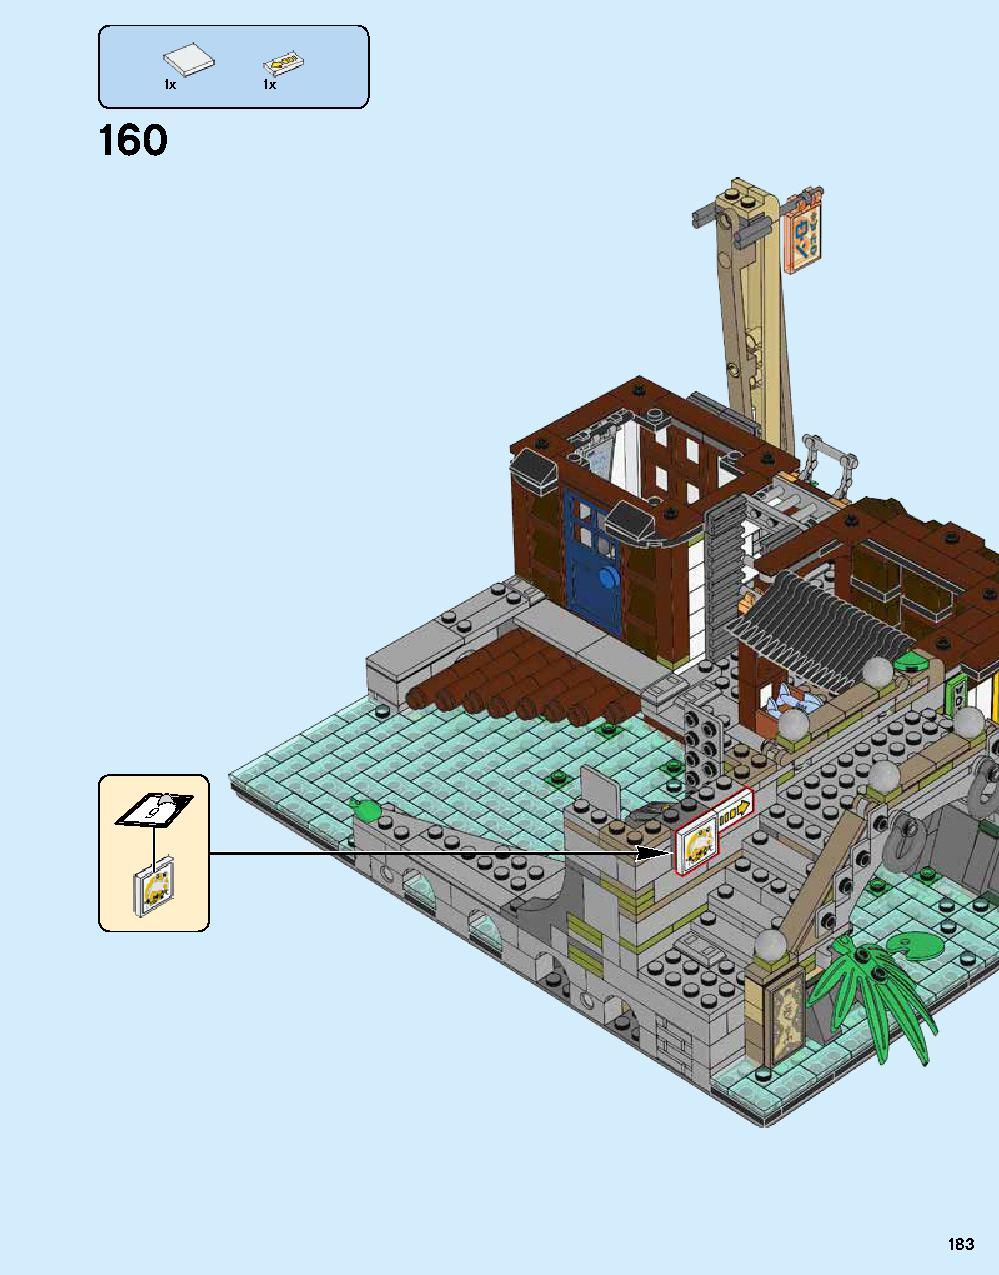 ニンジャゴー シティ 70620 レゴの商品情報 レゴの説明書・組立方法 183 page